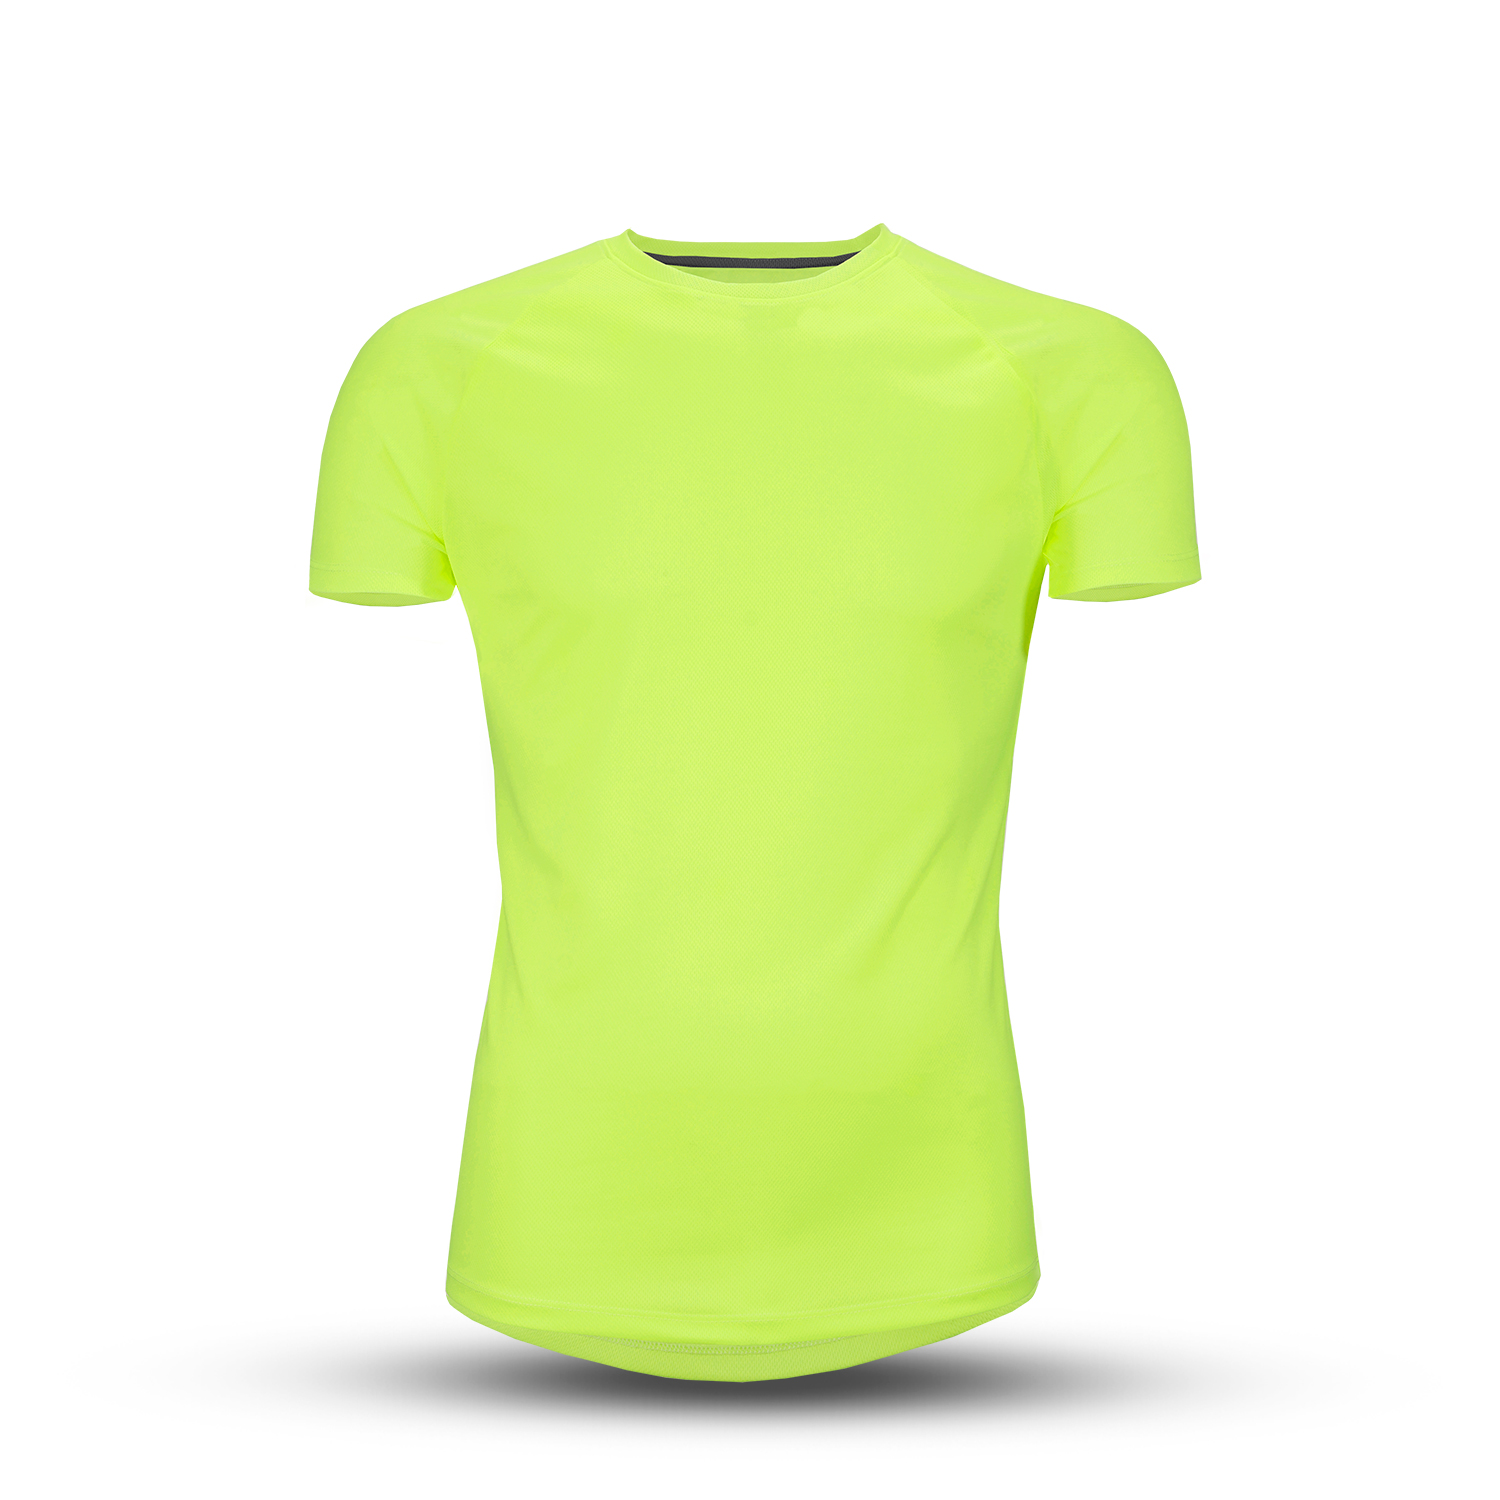 T-Shirt - Herren - Größe M - Farbe: gelb